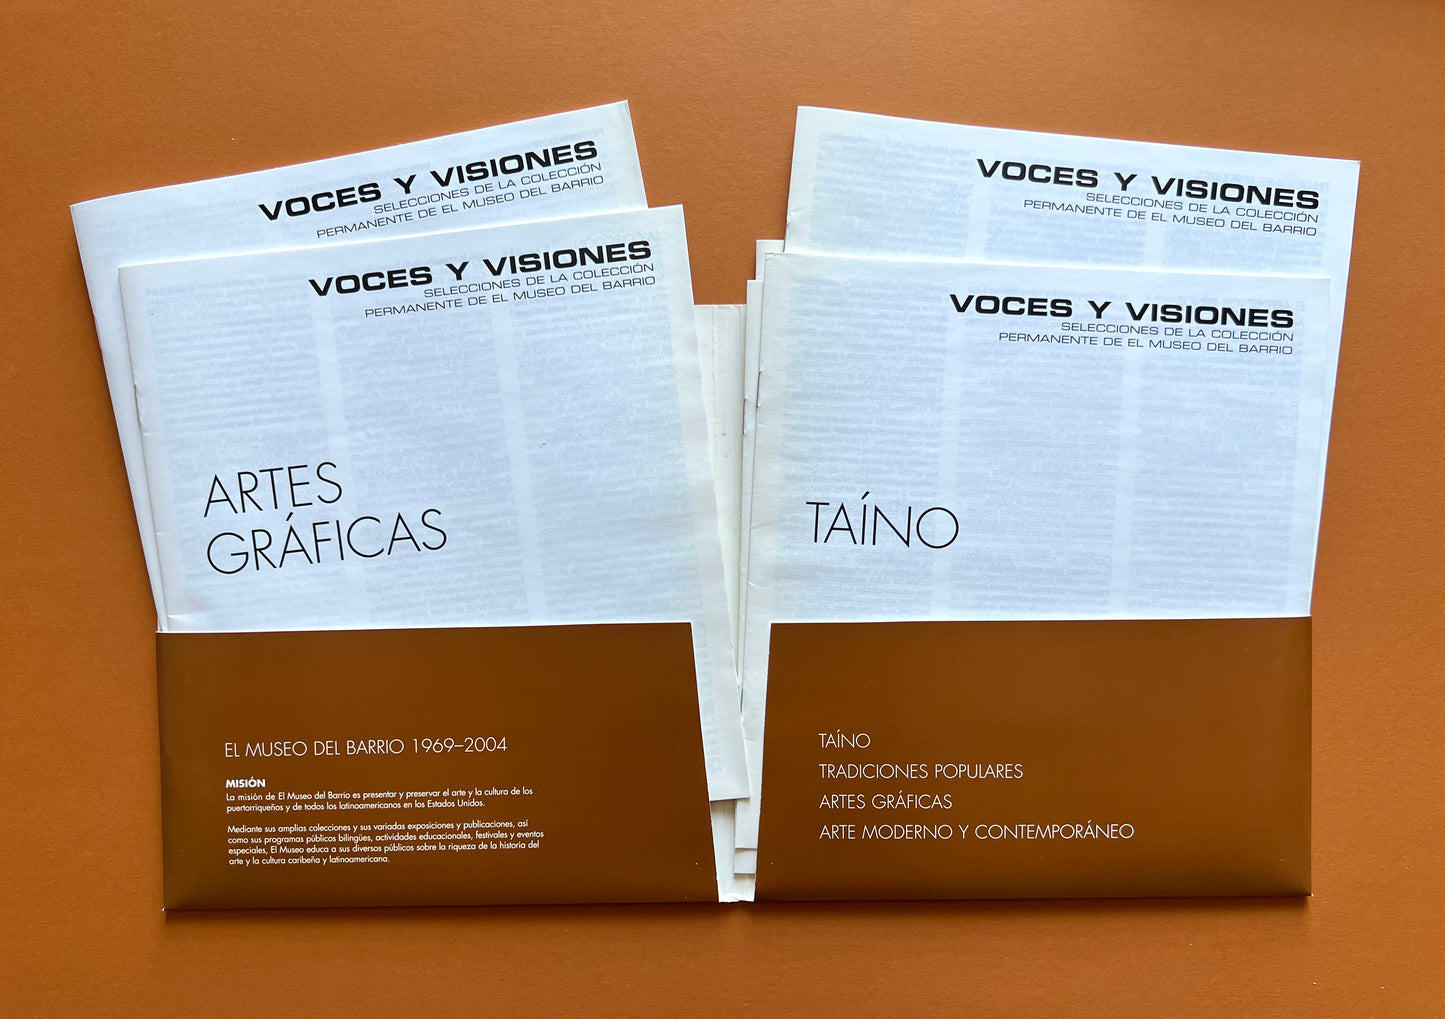 Voces Y Visiones: Highlights From El Museo Del Barrio's Permanent Collection